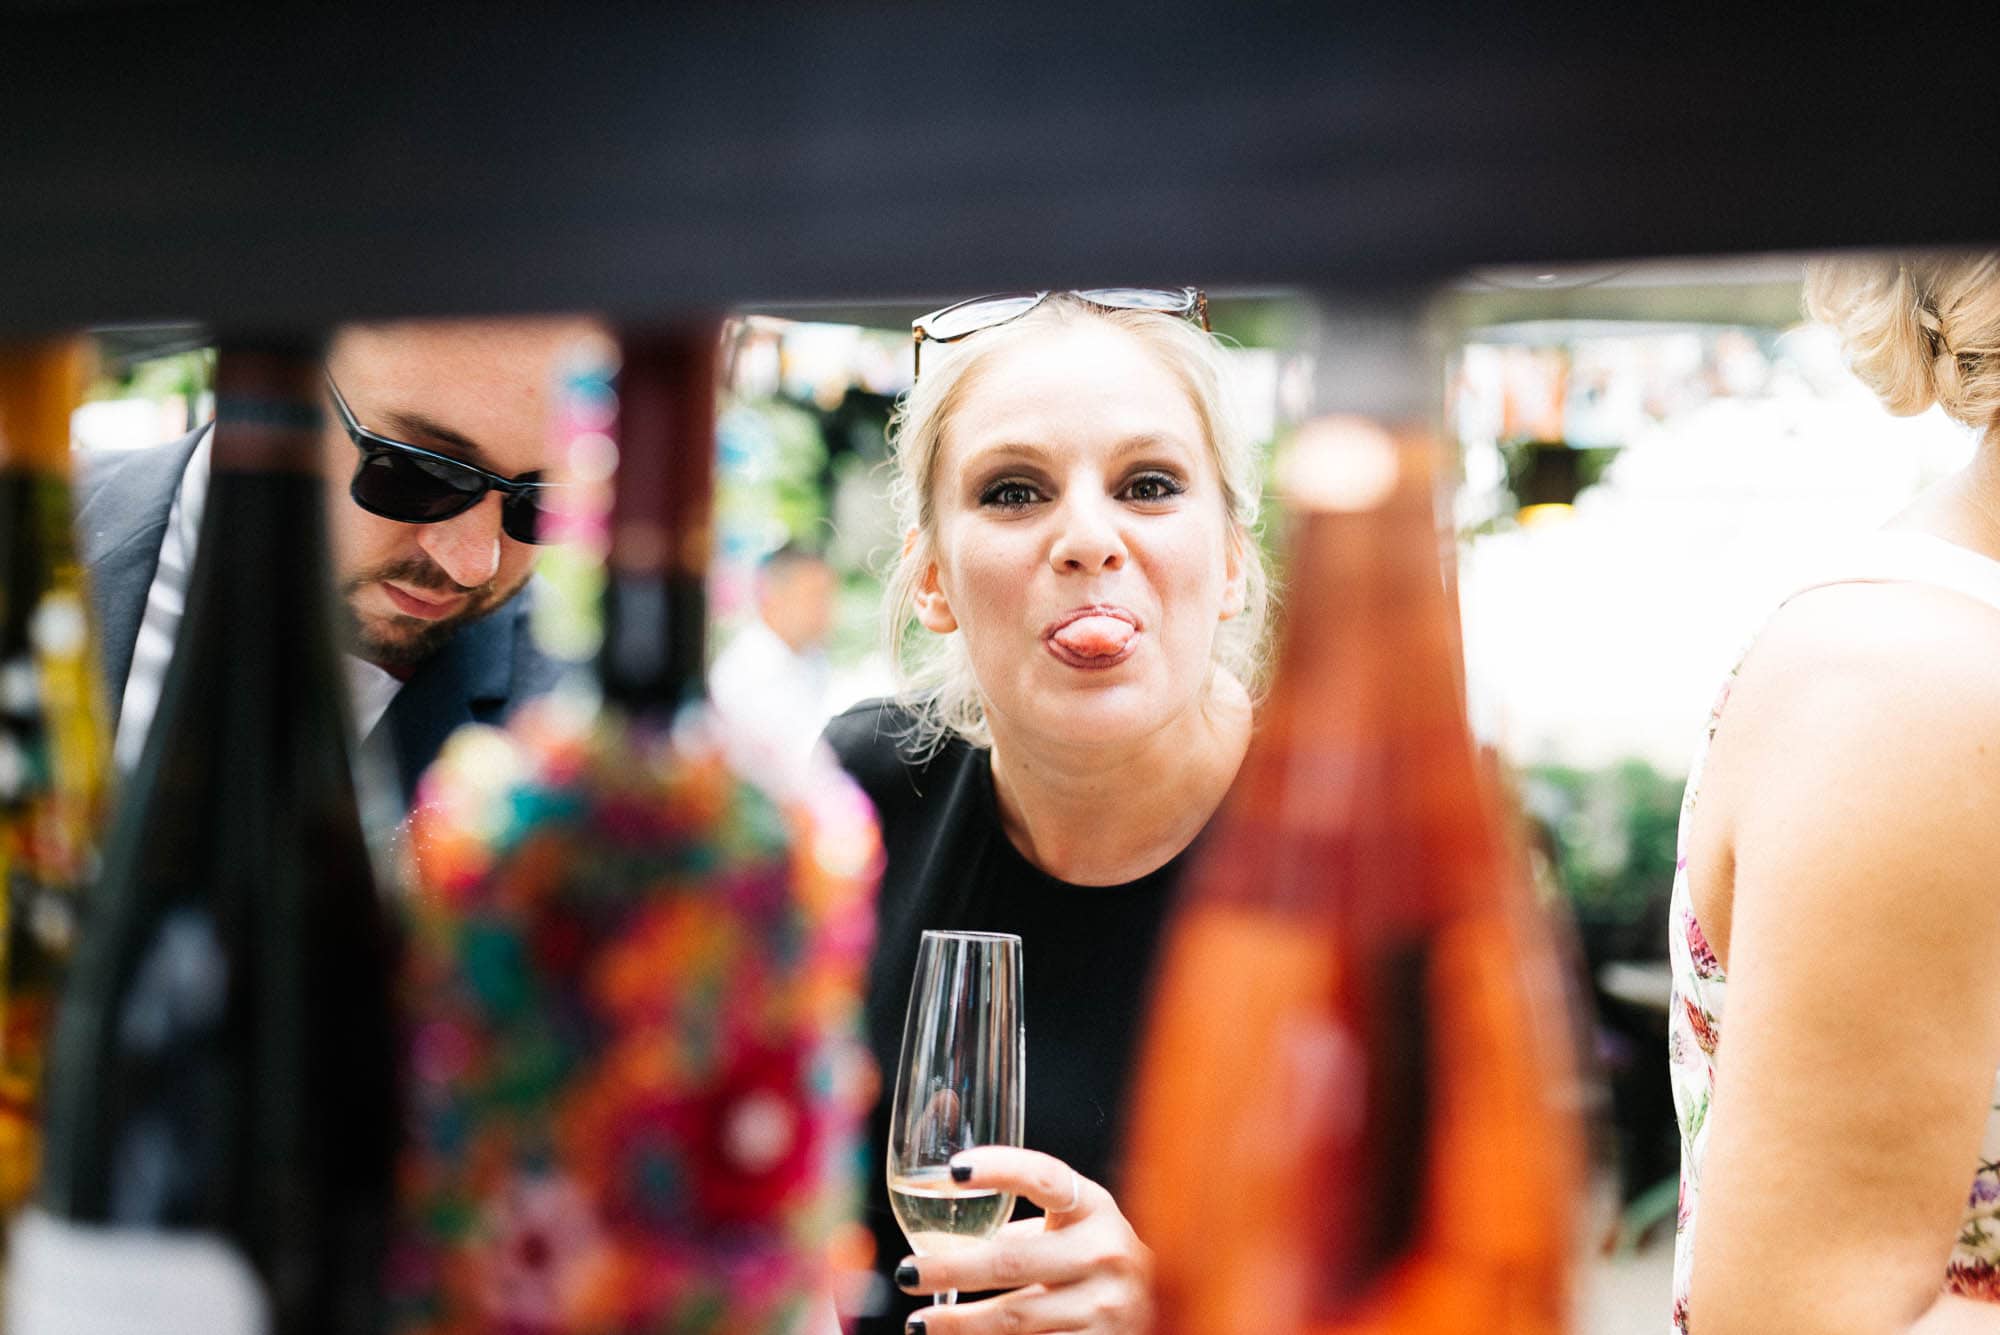 Frau streckt spielerisch die Zunge heraus, während sie ein Glas Wein in der Hand hält, im Hintergrund Regale mit Hochzeitsbildern und Flaschen.